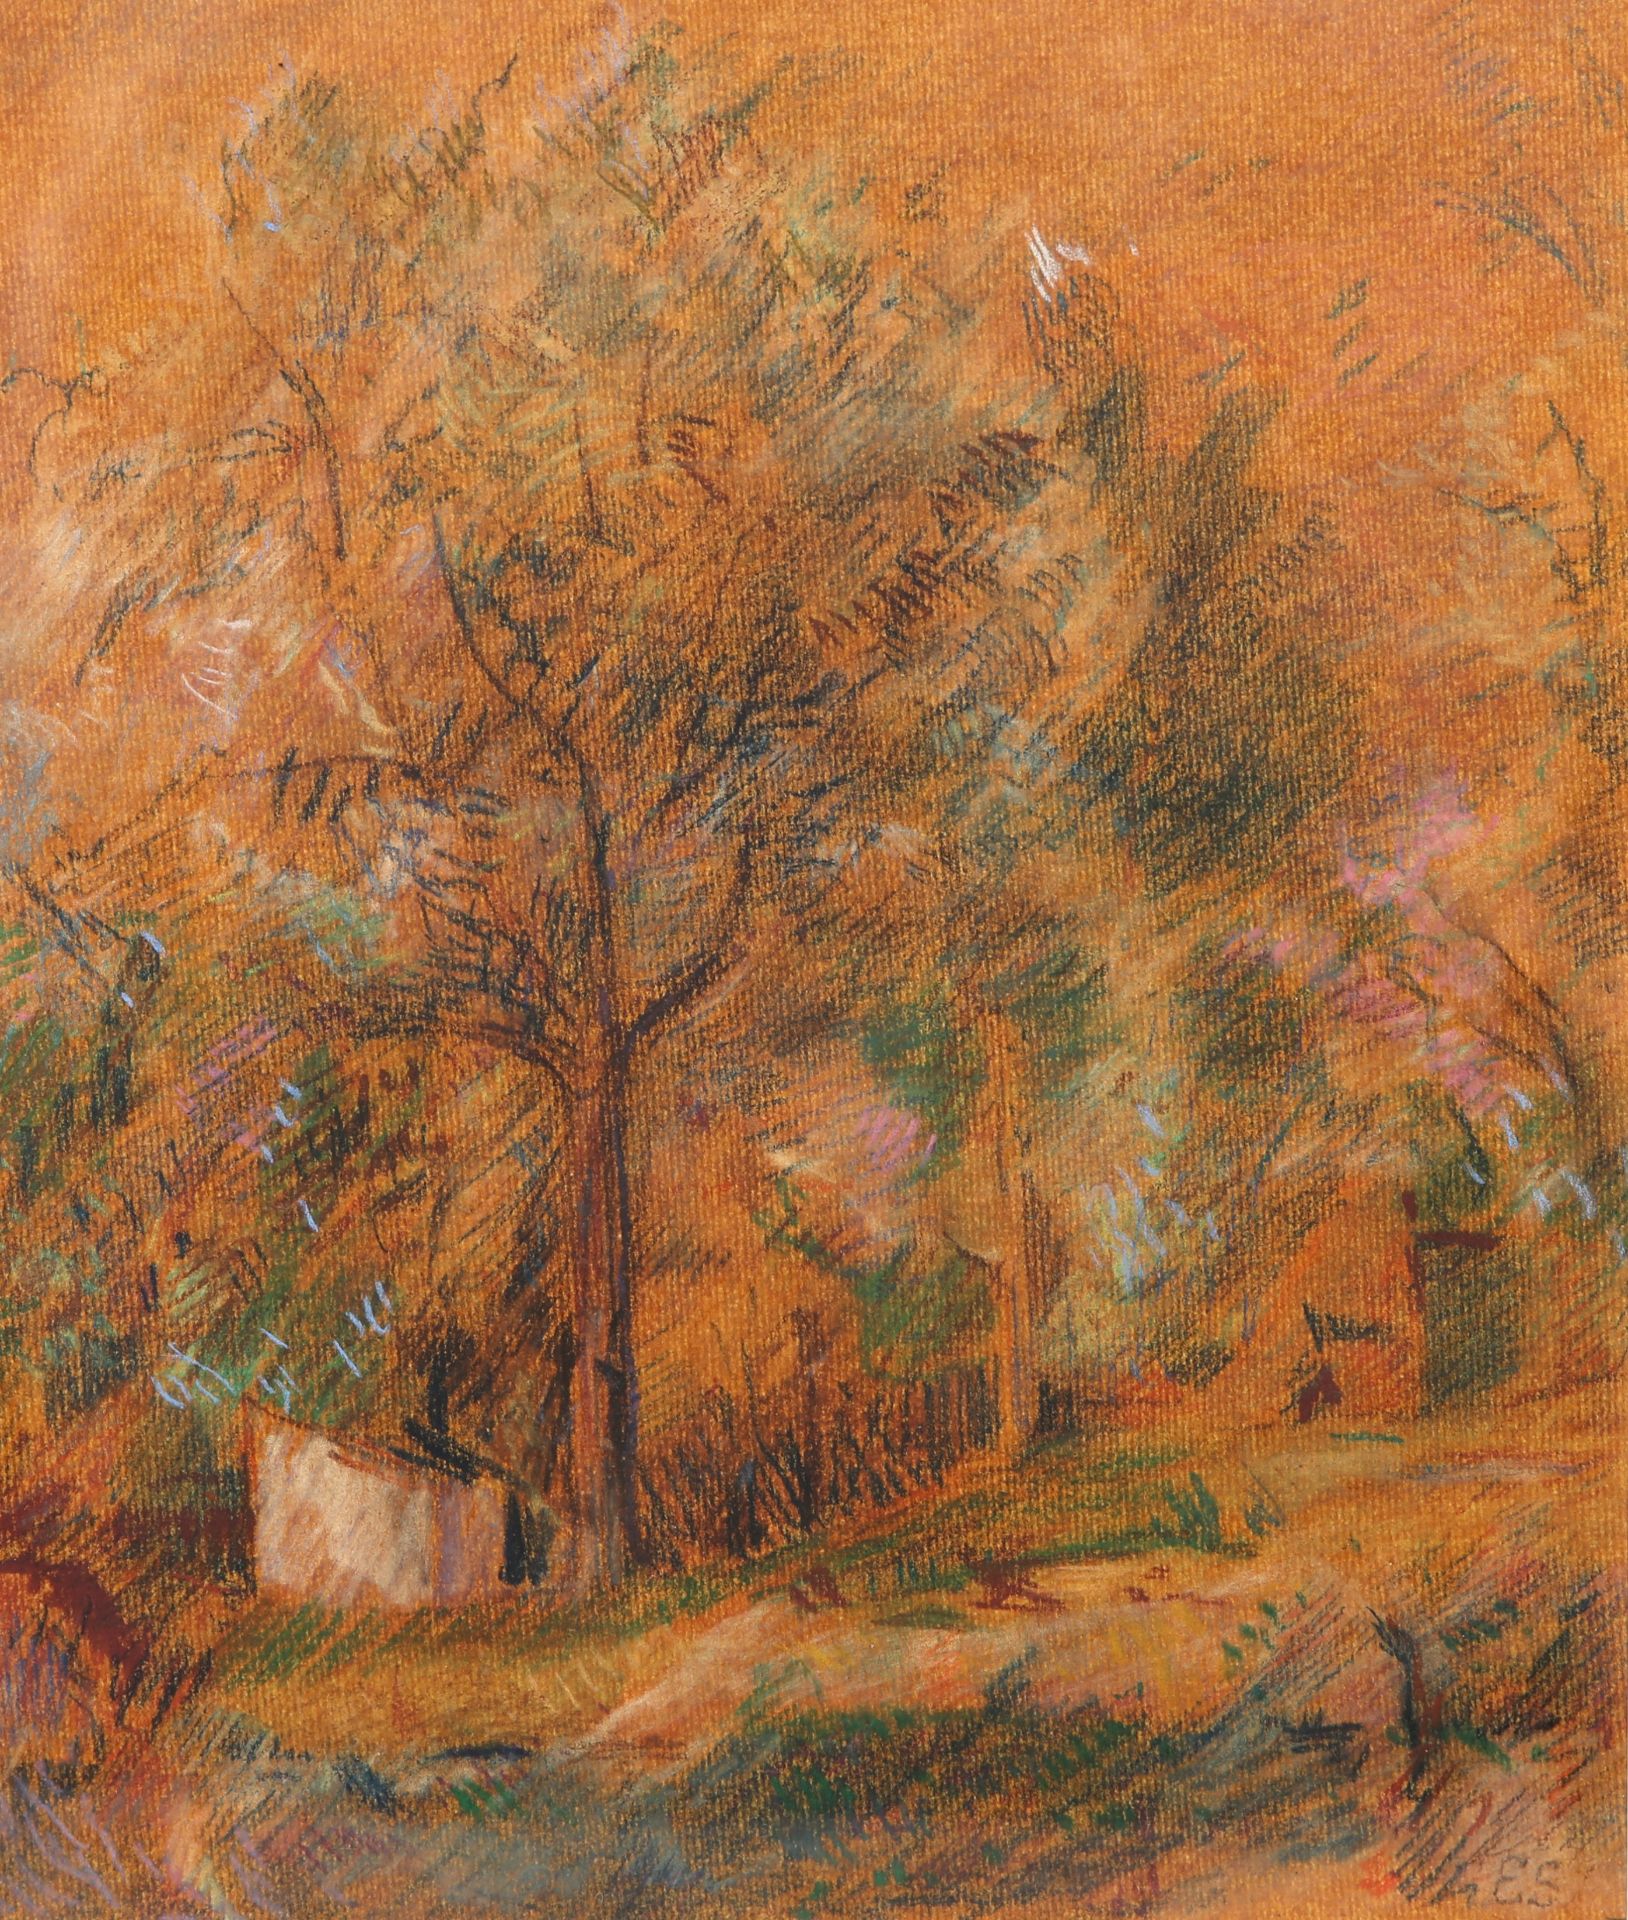 ELLIOTT SEABROOKE (1886-1950), "SPRING TREE"